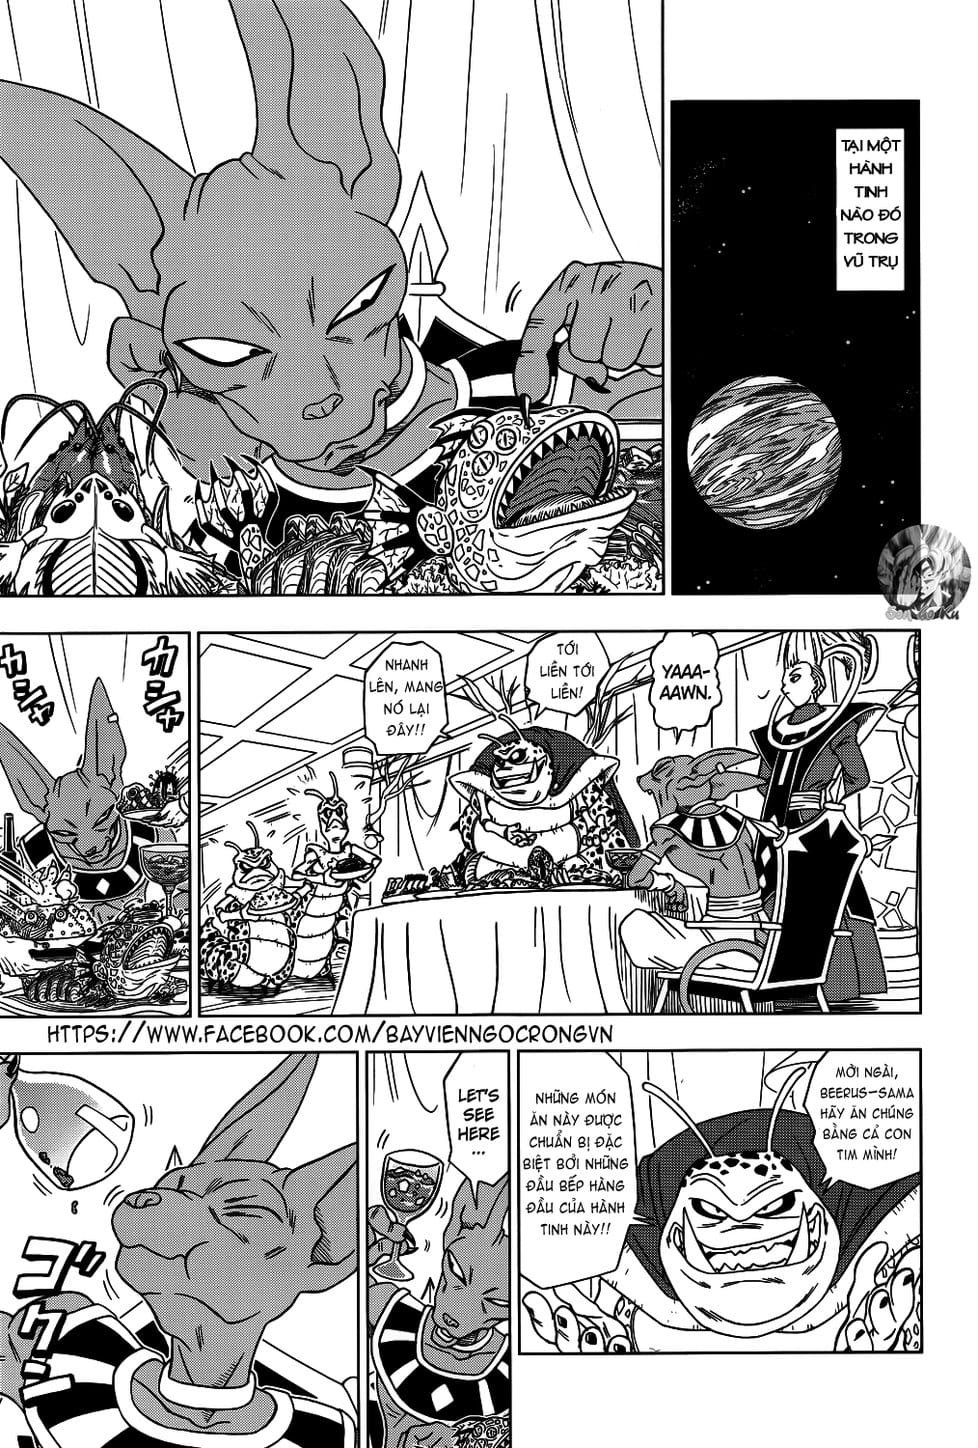 Truyện Tranh Truy Tìm Ngọc Rồng Siêu Cấp - Dragon Ball Super trang 9